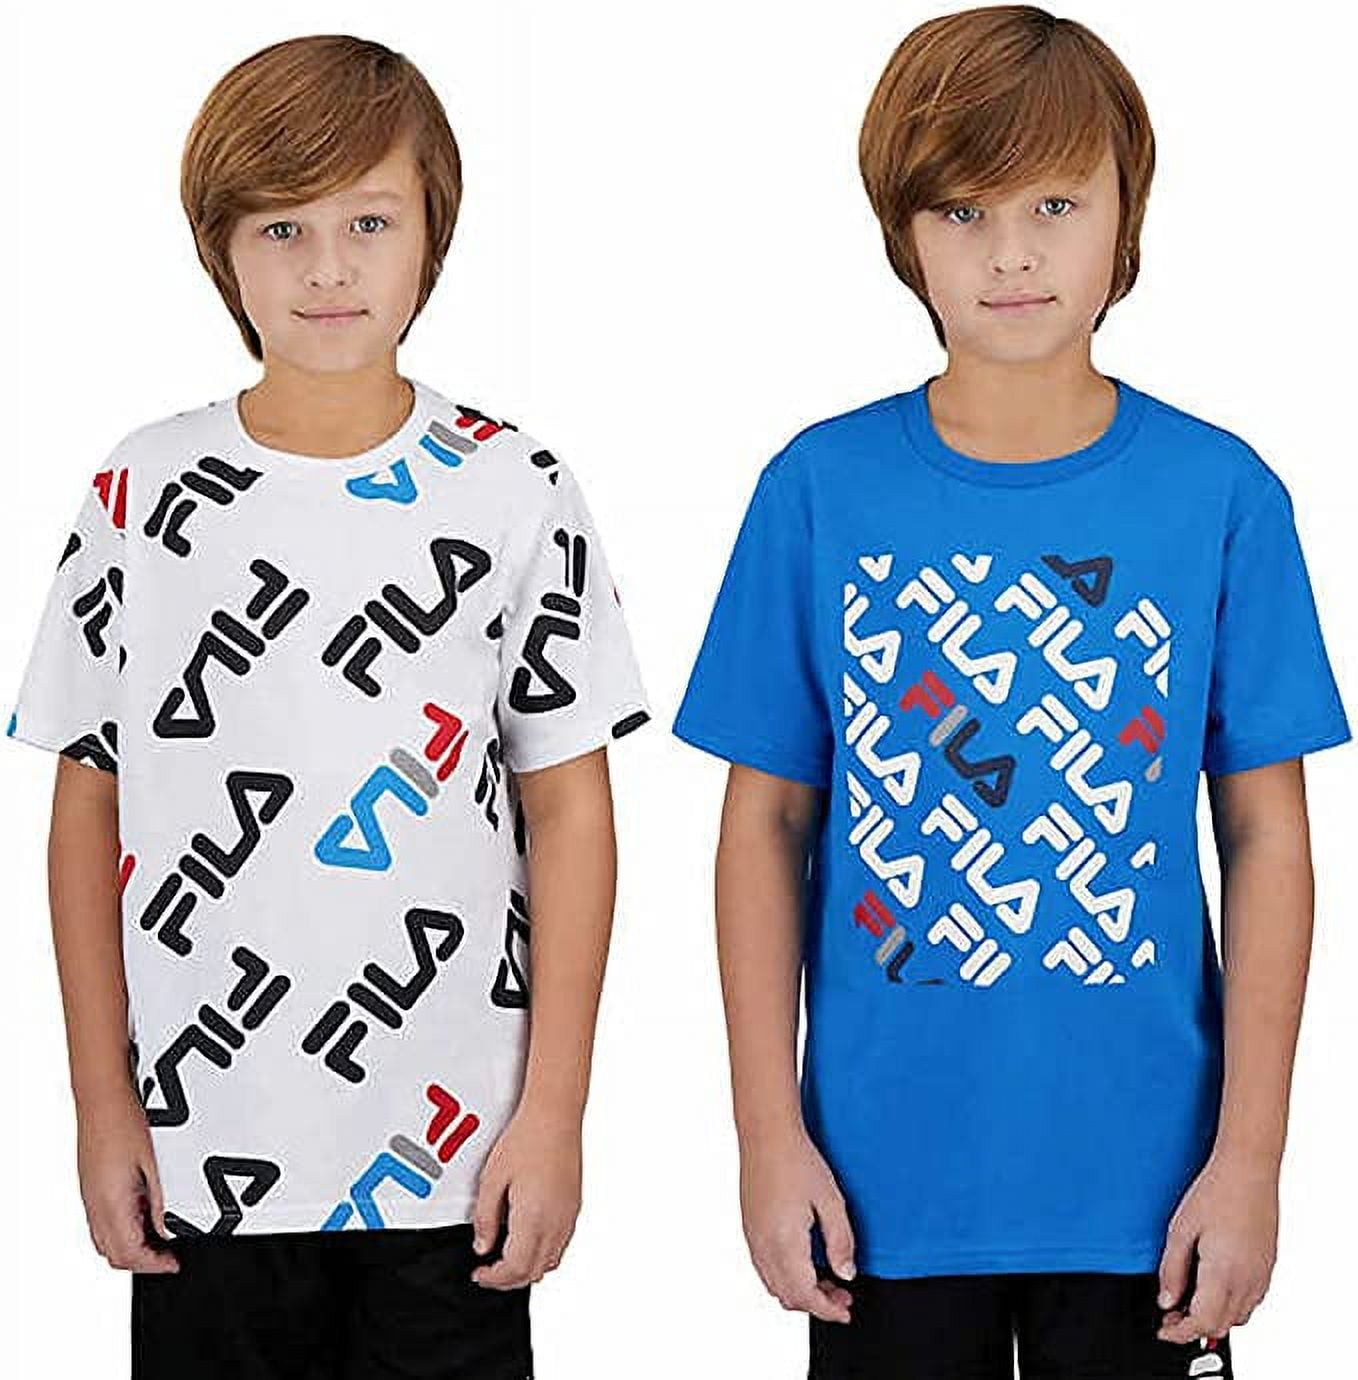 smugling Høre fra ambition Fila Youth Boy's 2 Pack Short Sleeve T-Shirts XLrg - Walmart.com